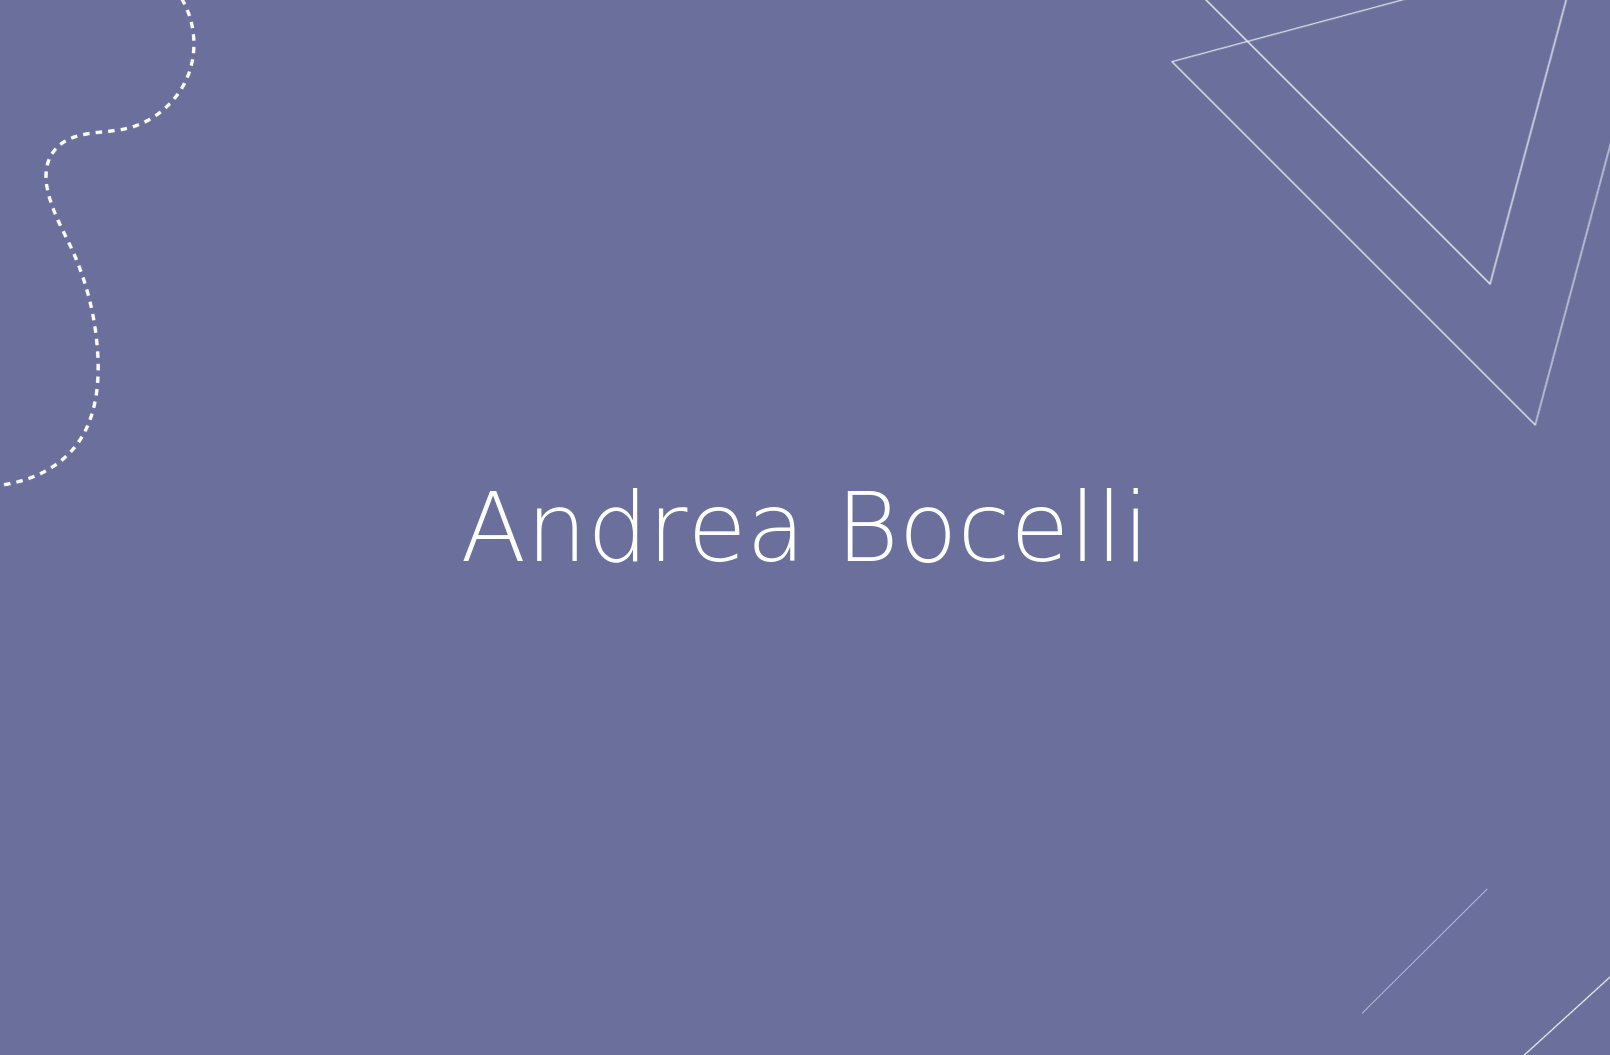 Biografía de Andrea Bocelli